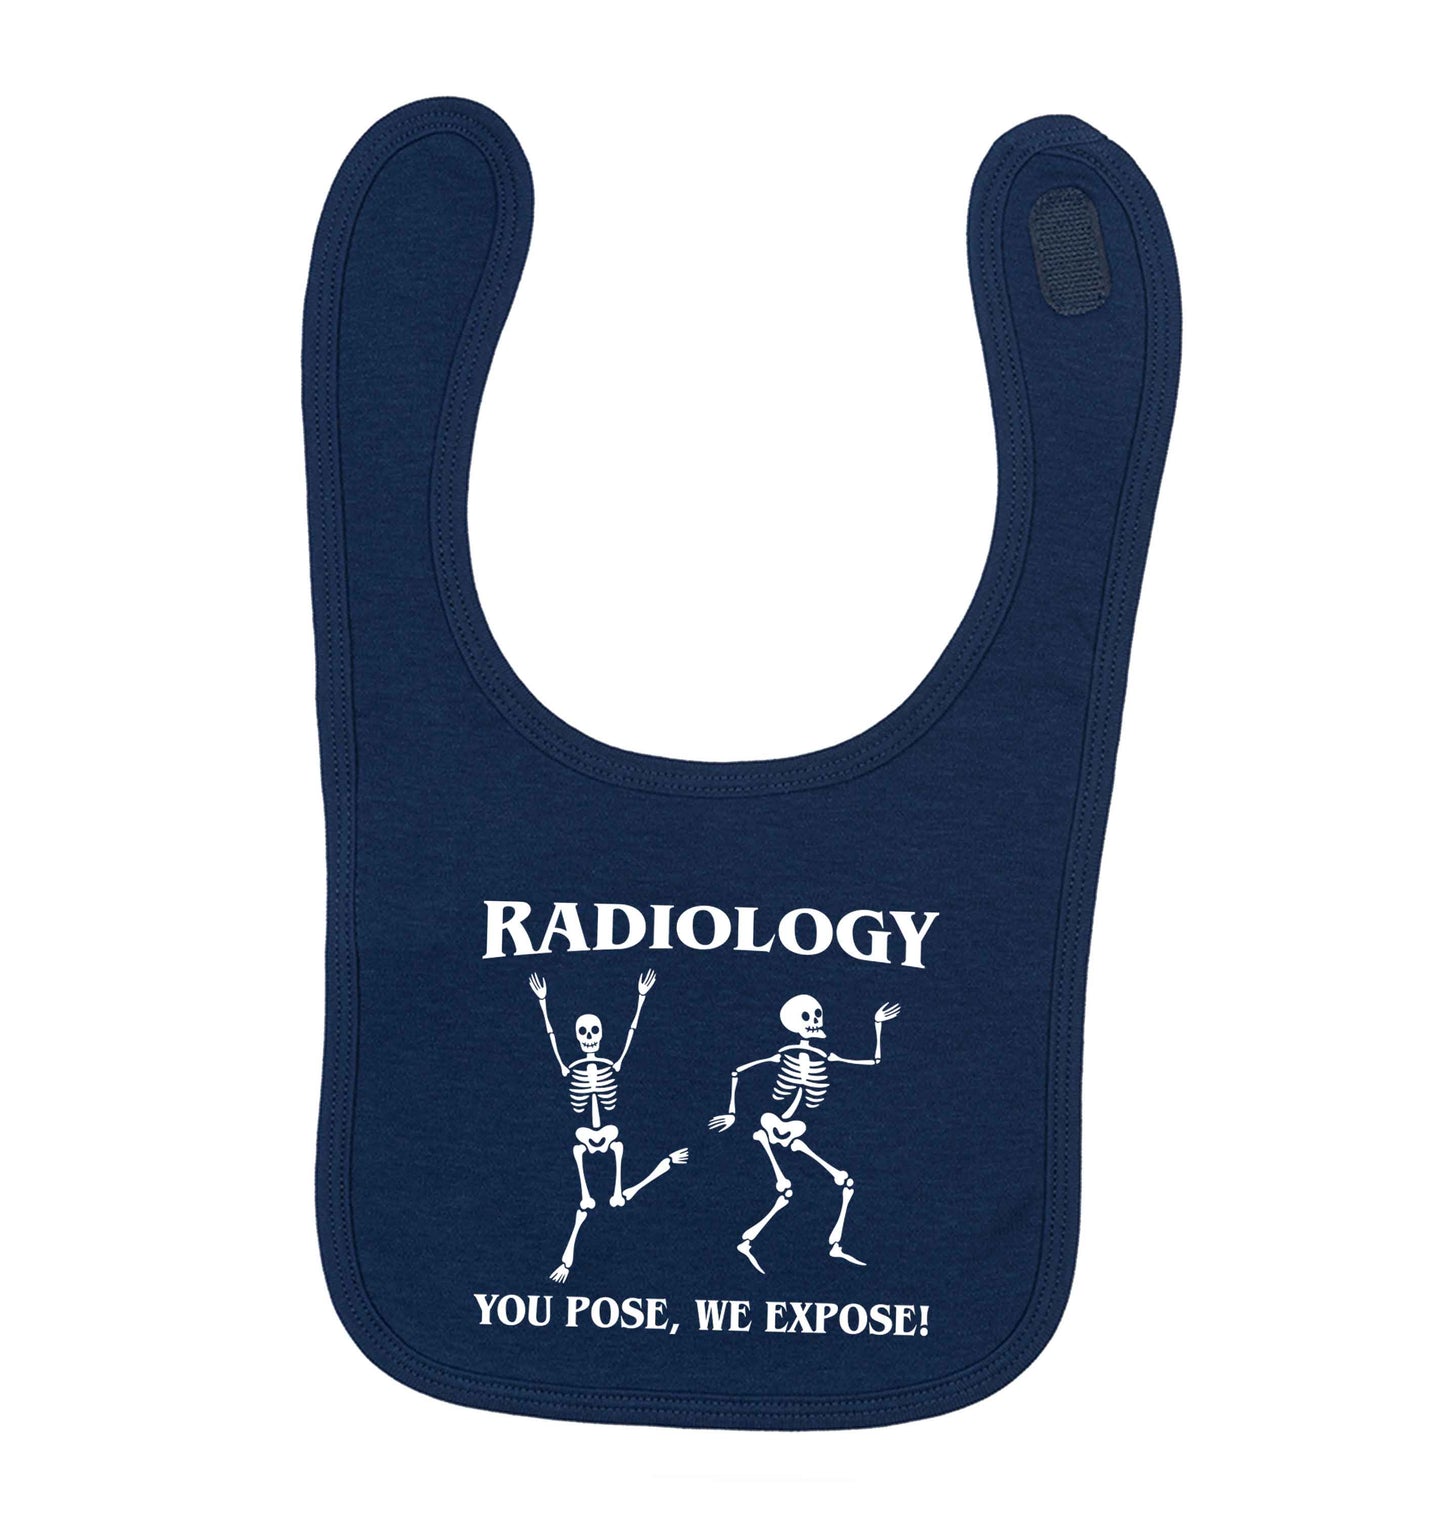 Radiology you pose we expose navy baby bib